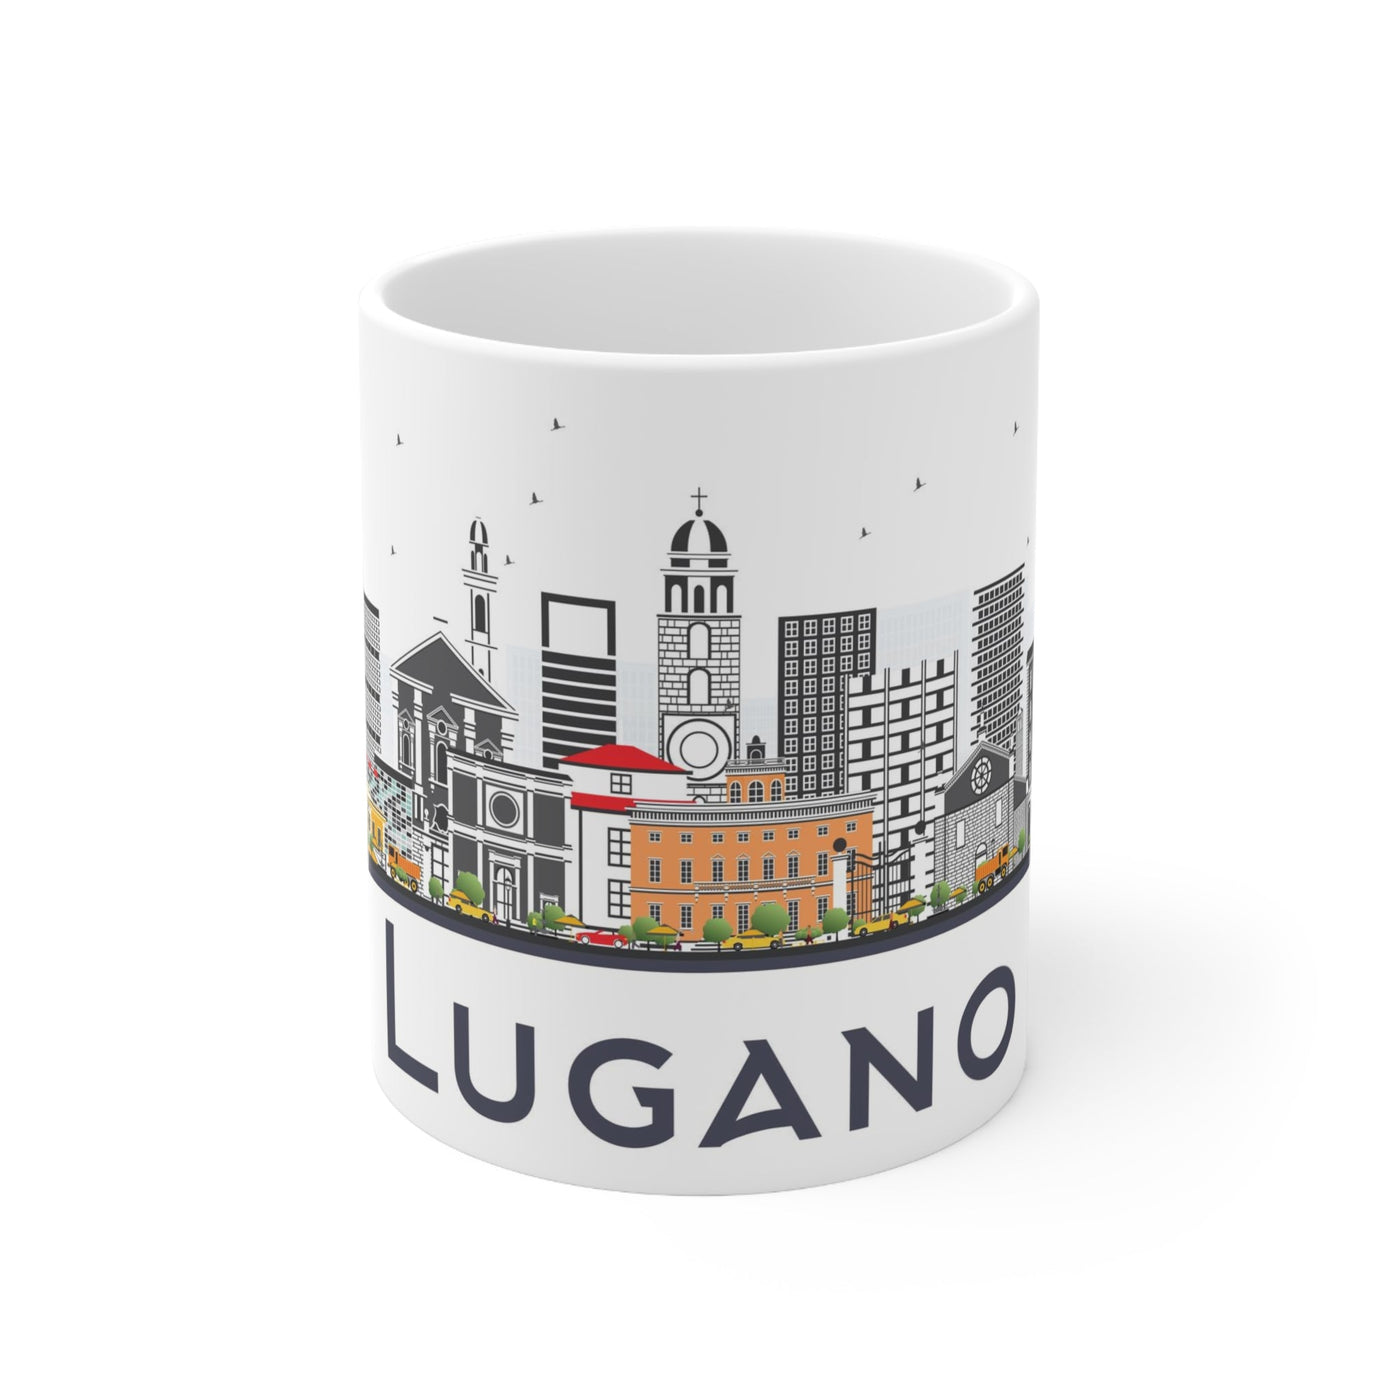 Lugano Switzerland Coffee Mug - Ezra's Clothing